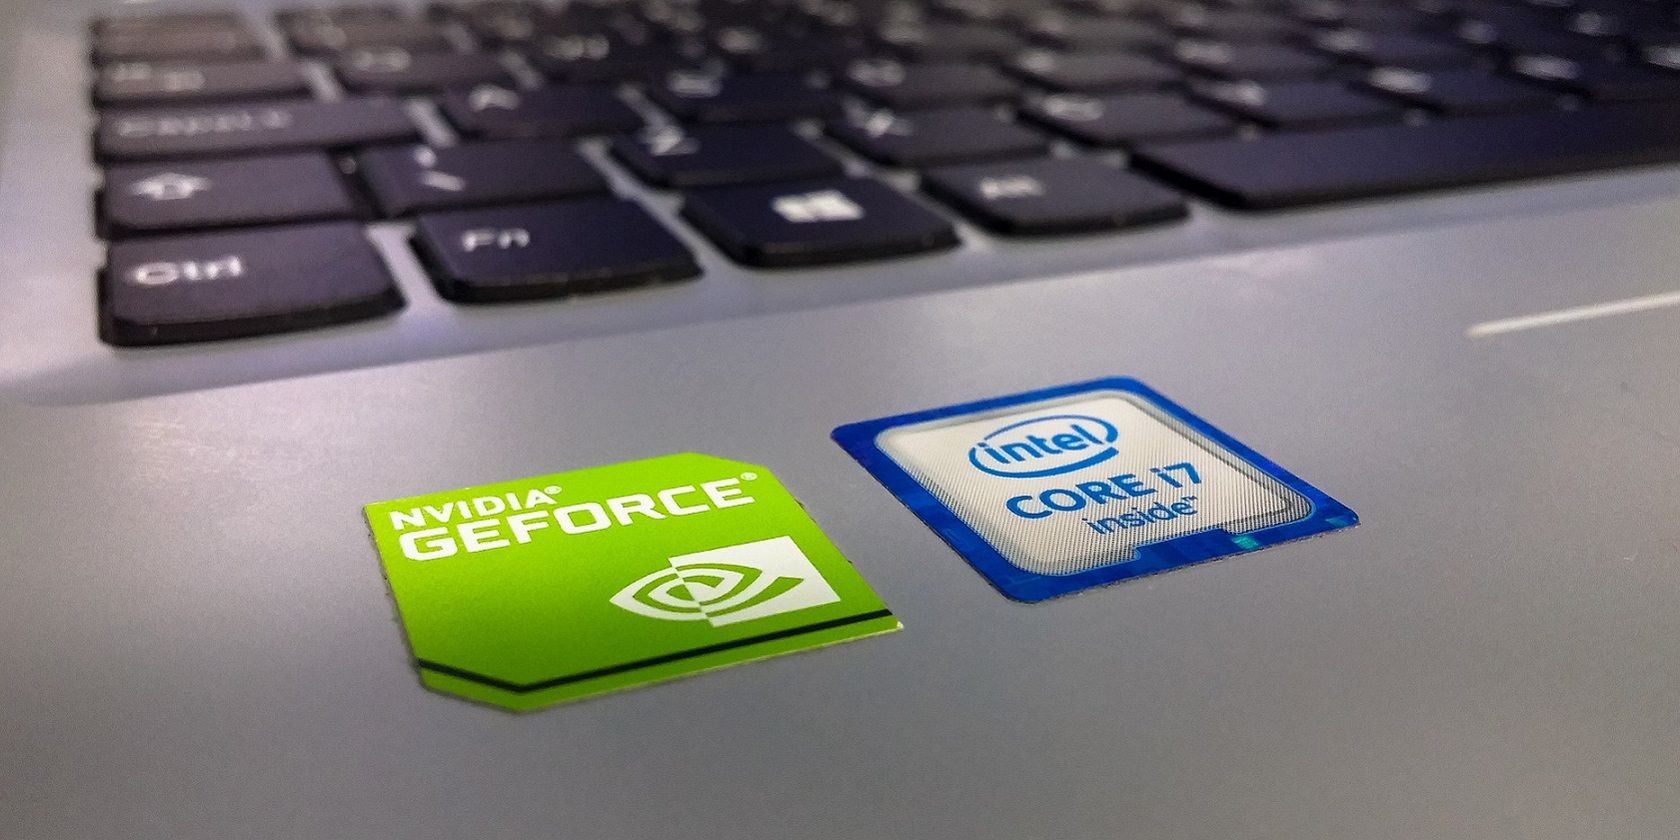 A NVIDIA GeForce sticker